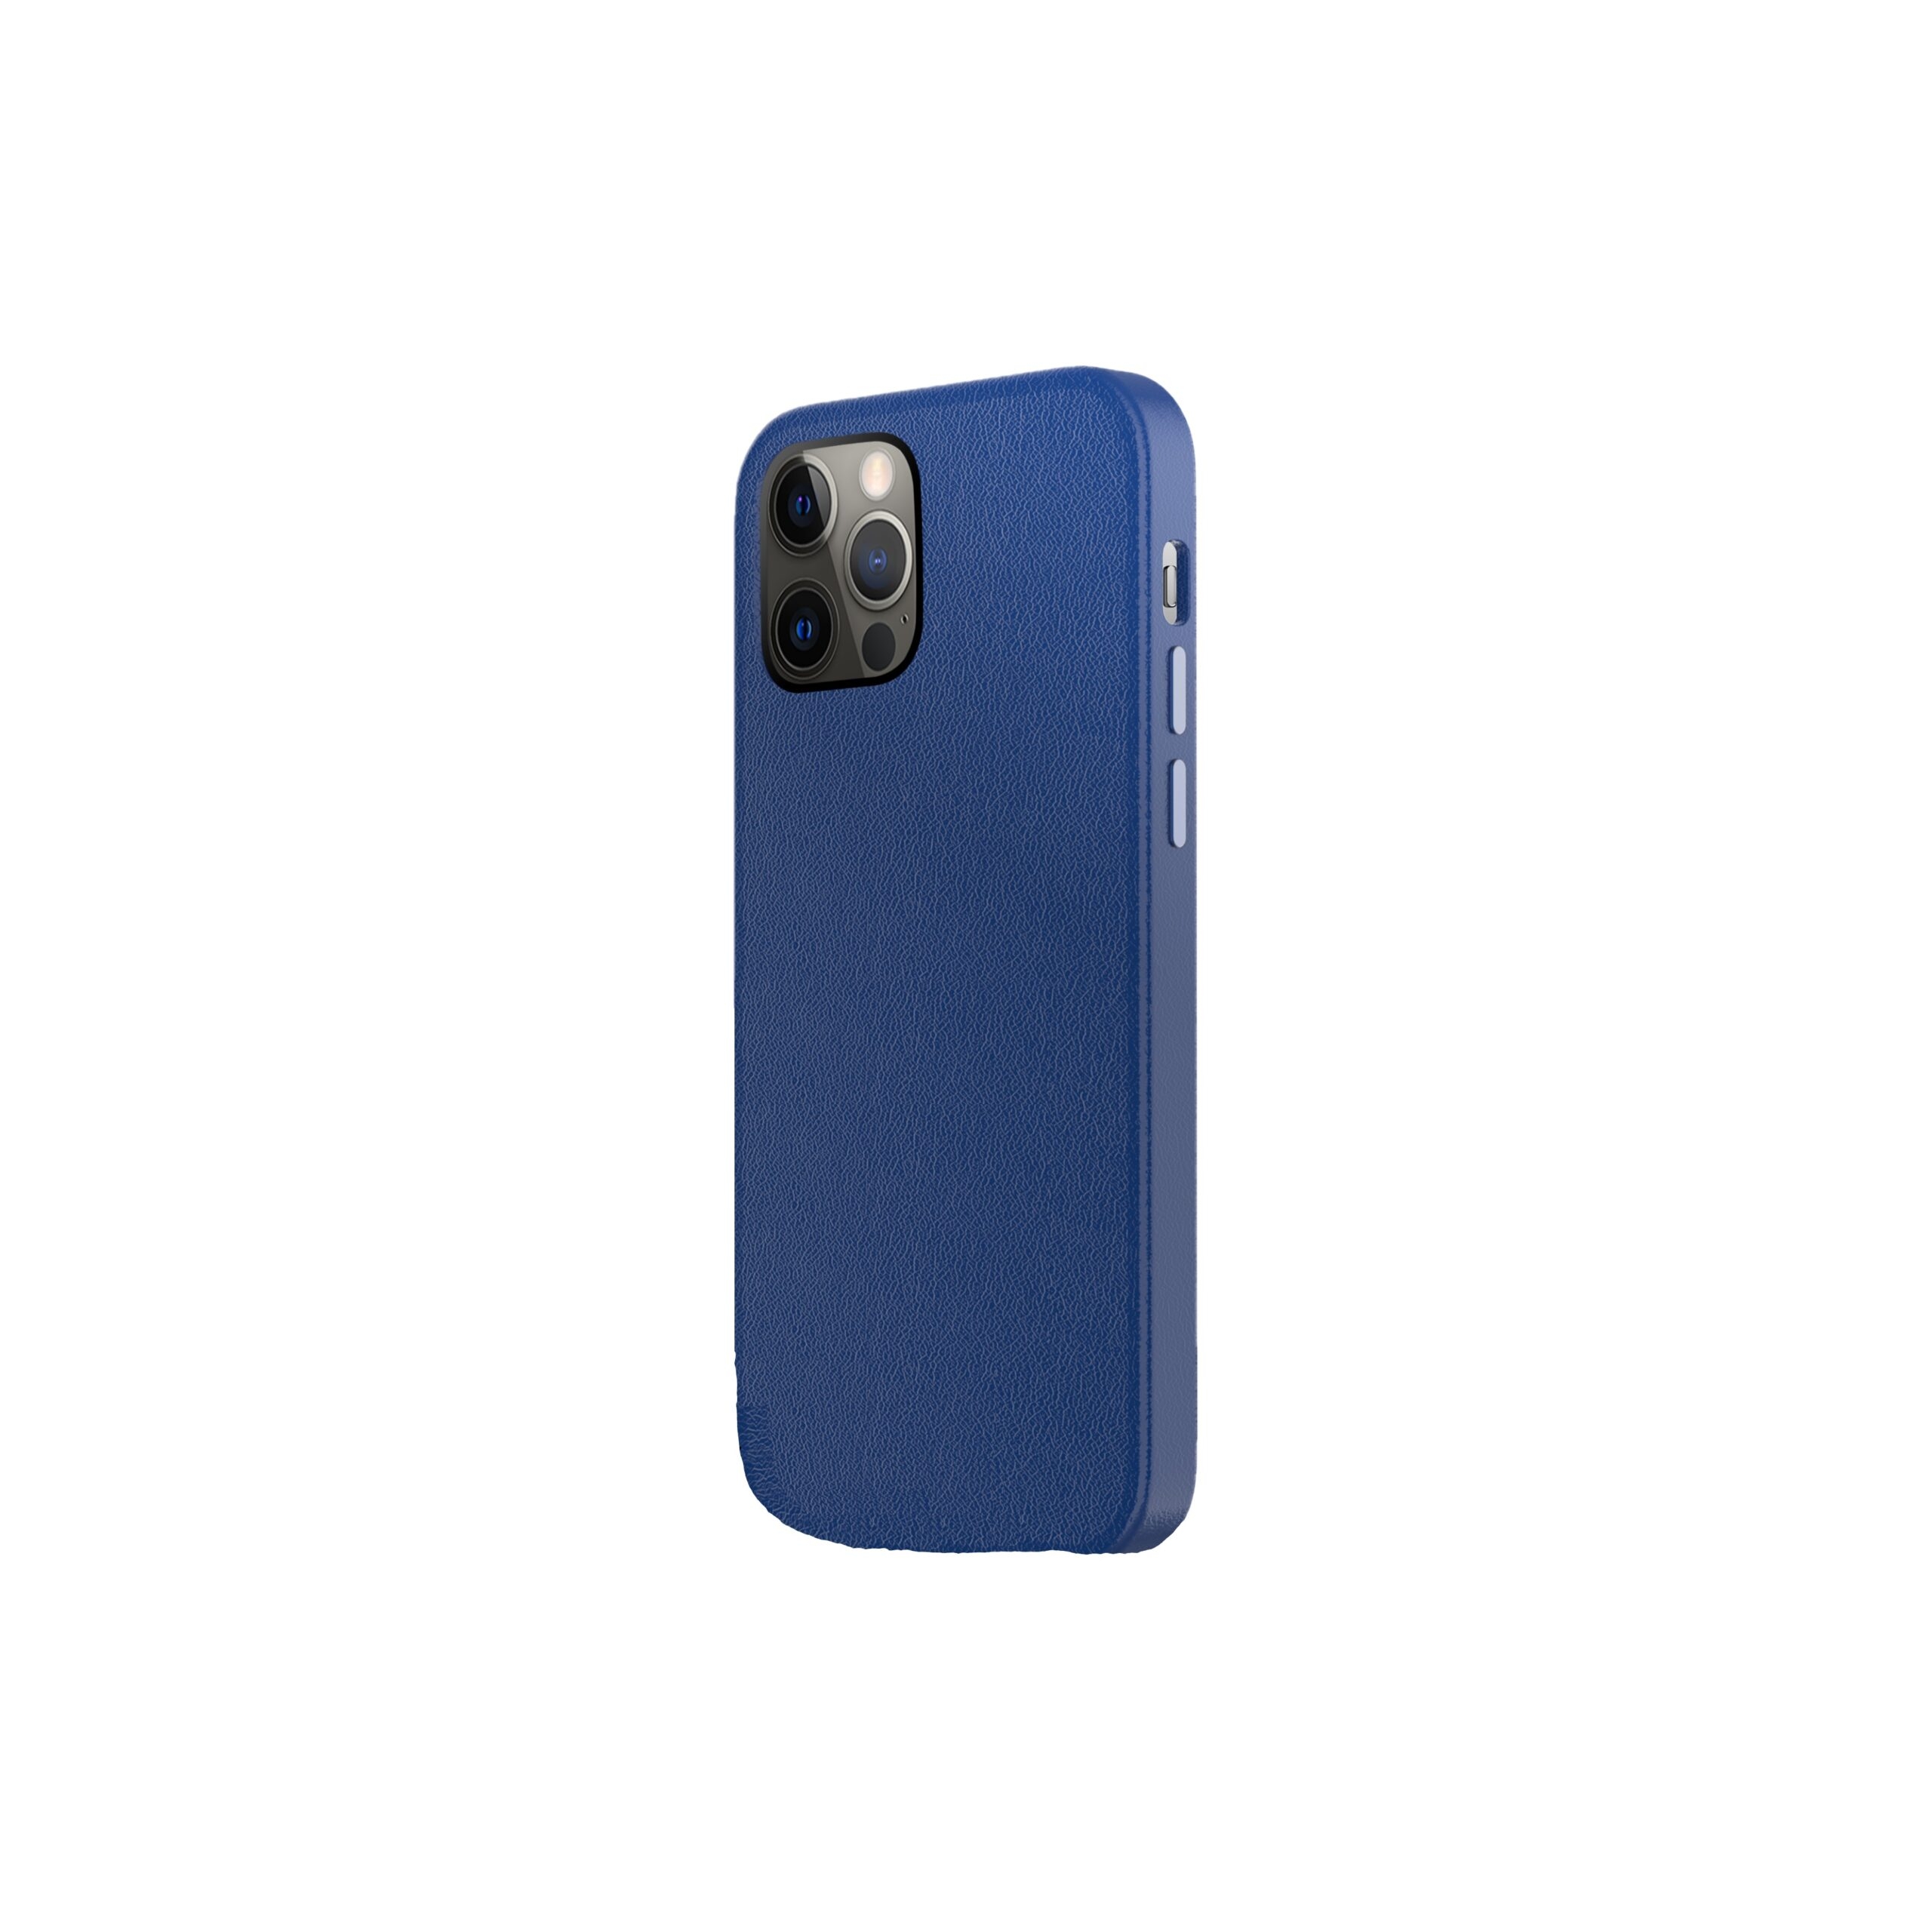 كفر جوال ايفون ( ماج سيف ) - أزرق Green - Luju MagSafe Leather Case for iPhone 12 / 12 Pro 6.1"